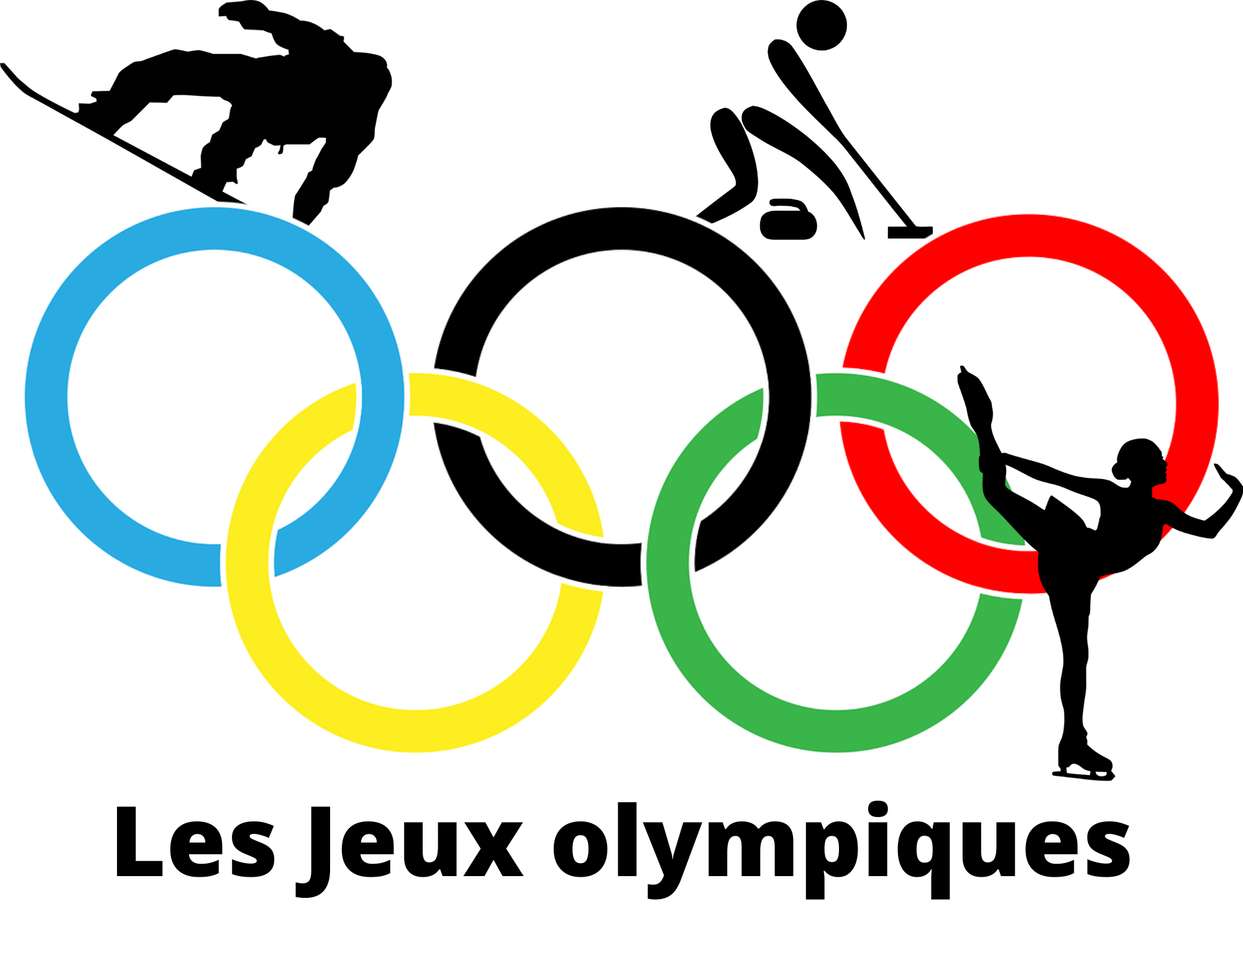 Los juegos olímpicos puzzle online a partir de foto